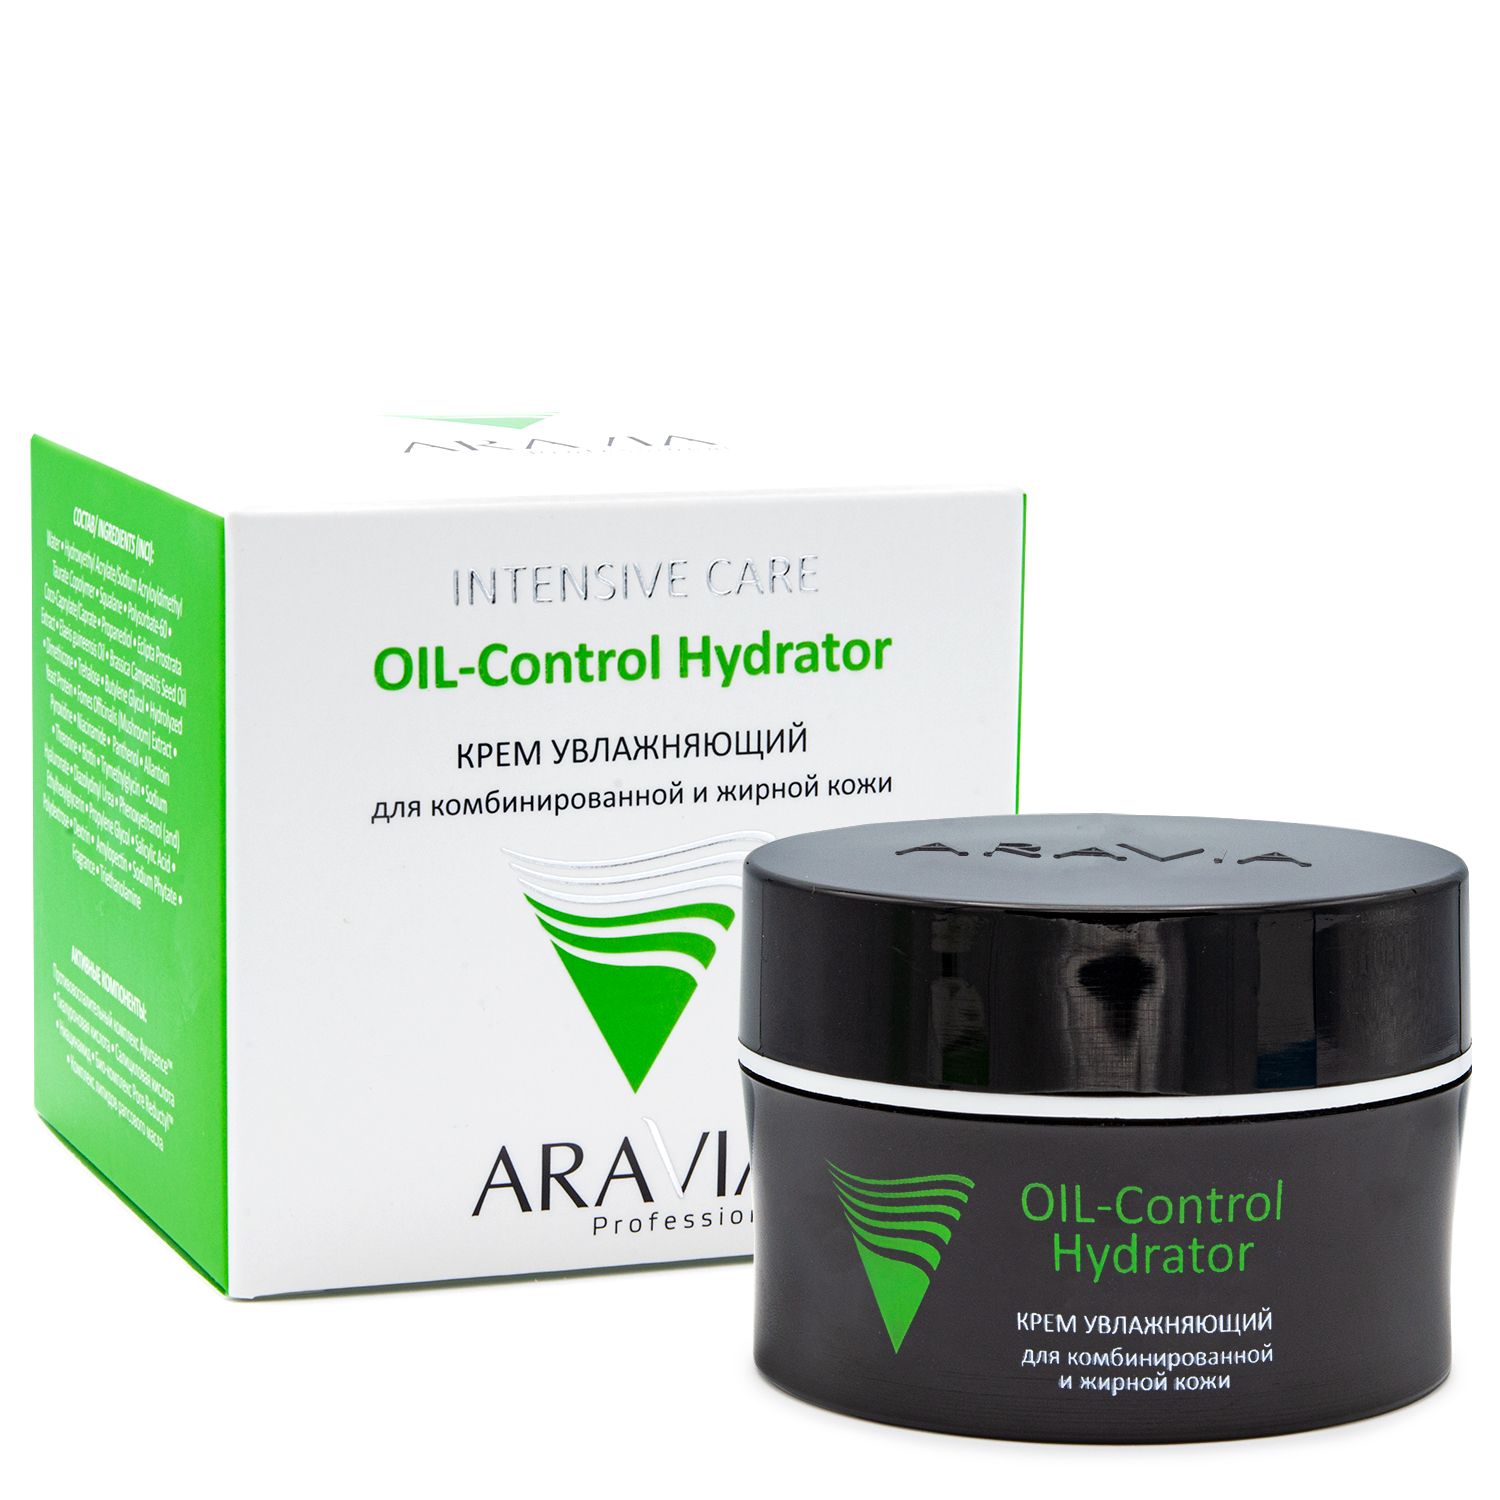 Aravia Professional Крем увлажняющий для комбинированной и жирной кожи OIL-Control Hydrator, 50мл